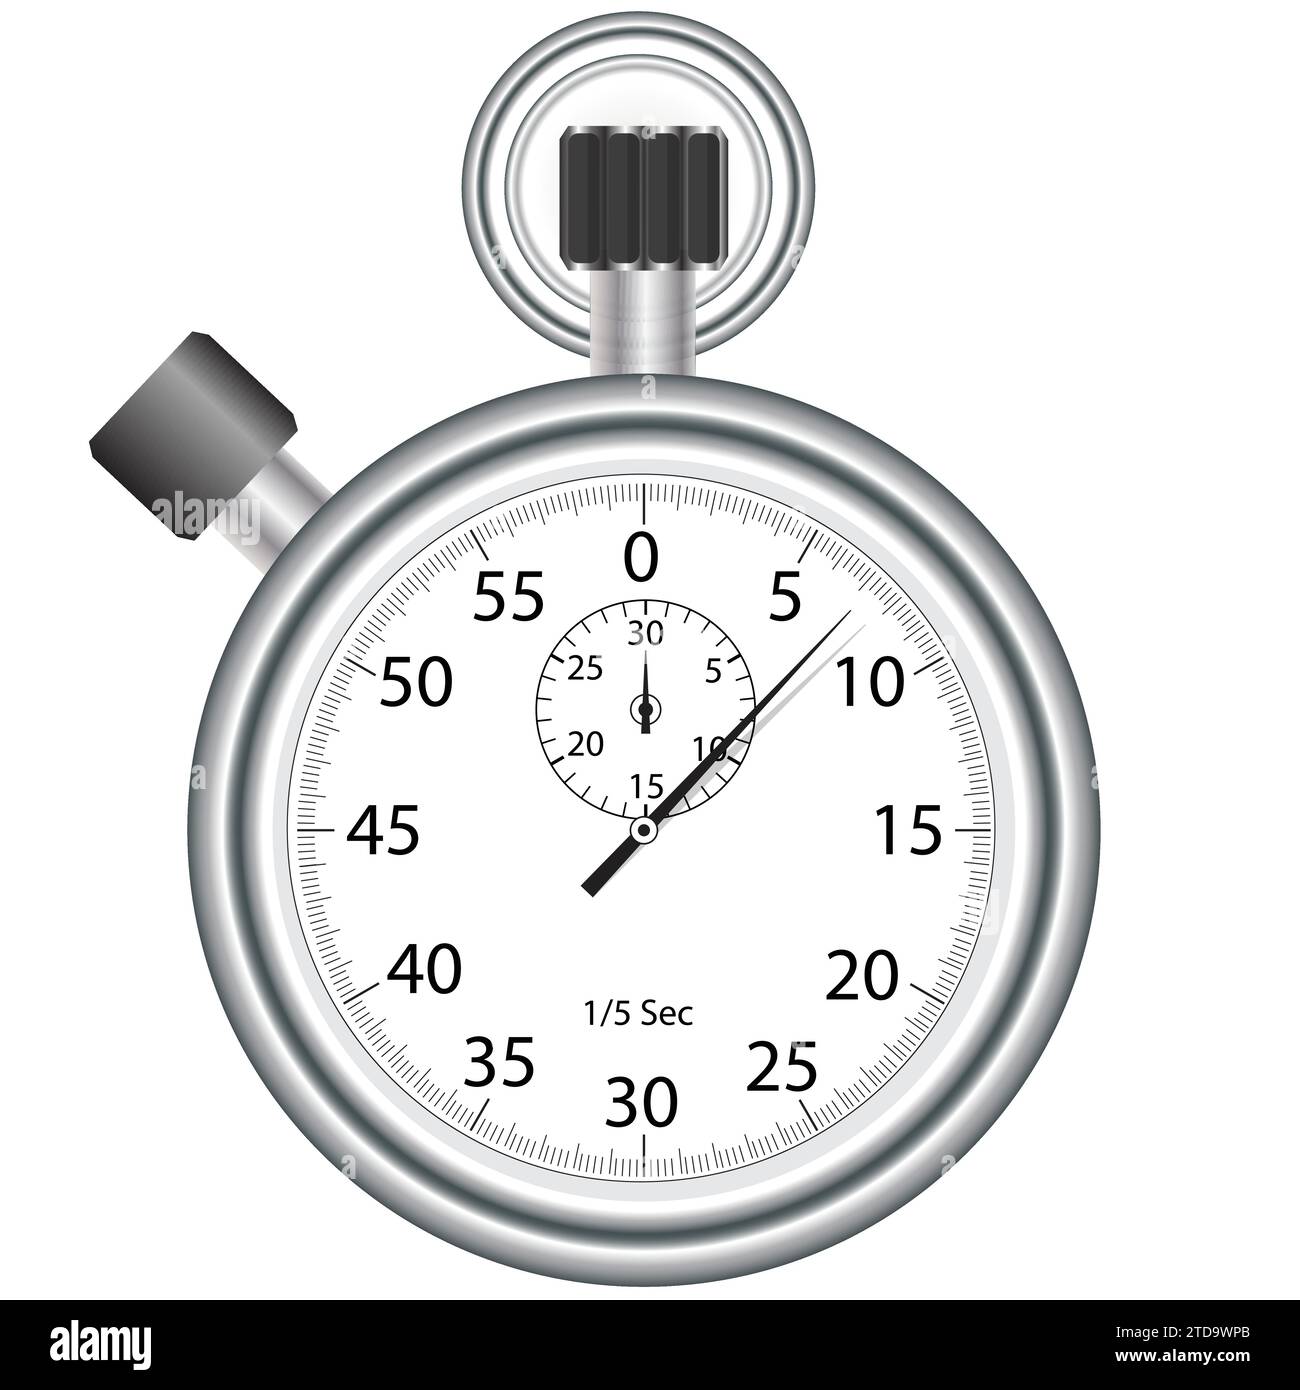 Ilustración Realista Del Cronómetro O Reloj Cronómetro Aislado En